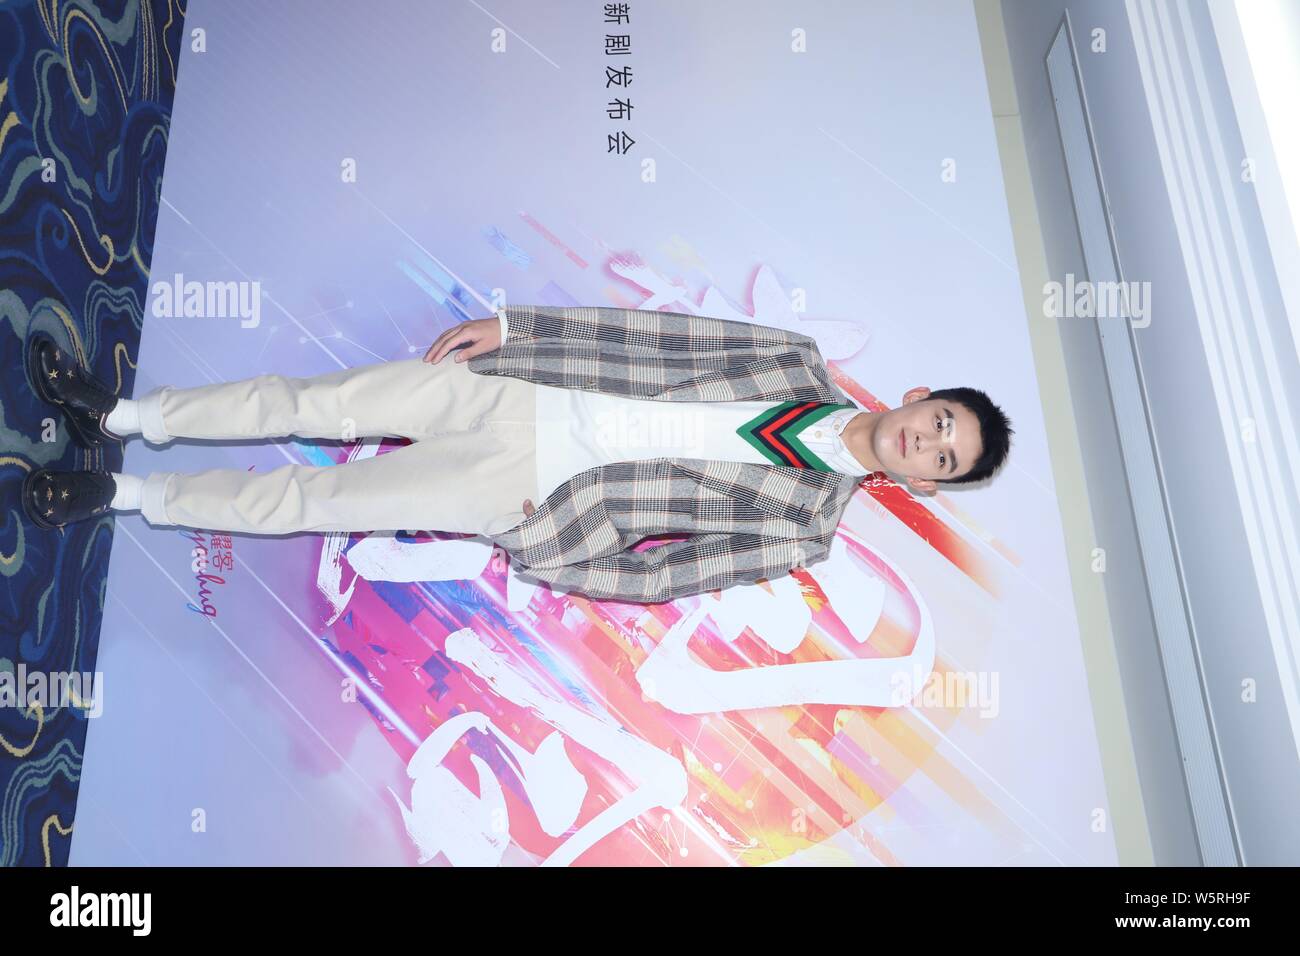 Leo acteur chinois Wu Lei assiste à une conférence de presse pour la nouvelle série TV 'Cross Fire' produit par Shanghai Youhug Media Co.Ltd. à Shanghai, Chine, 11 JU Banque D'Images